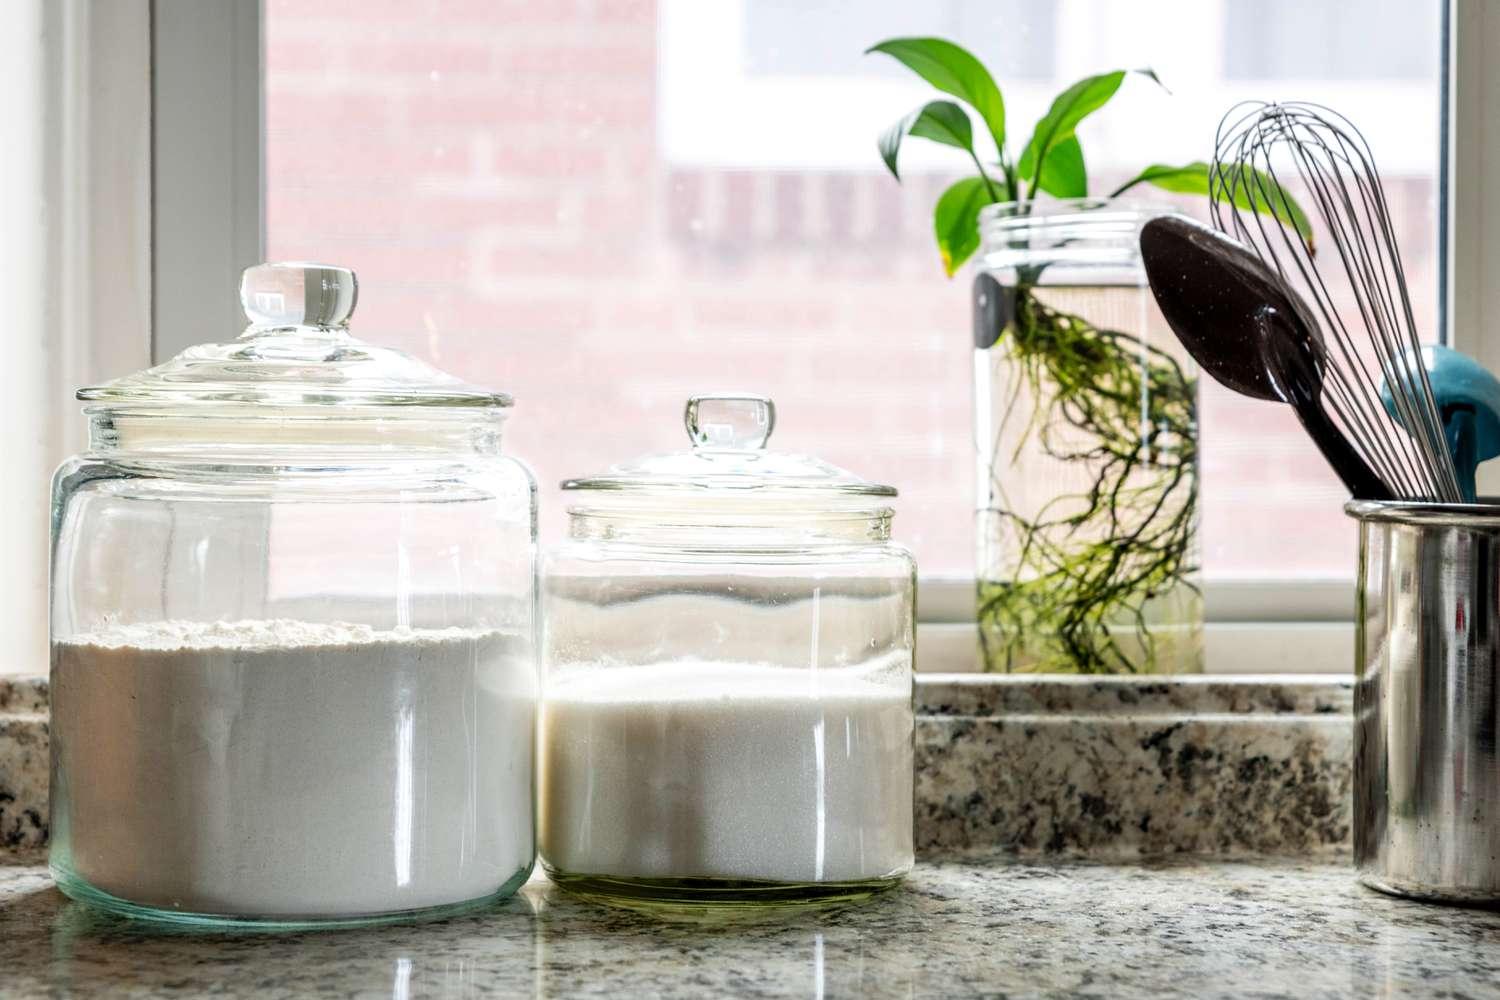 Mehl und Zucker in Glasbehältern auf dem Küchentisch mit Pflanze am Fenster